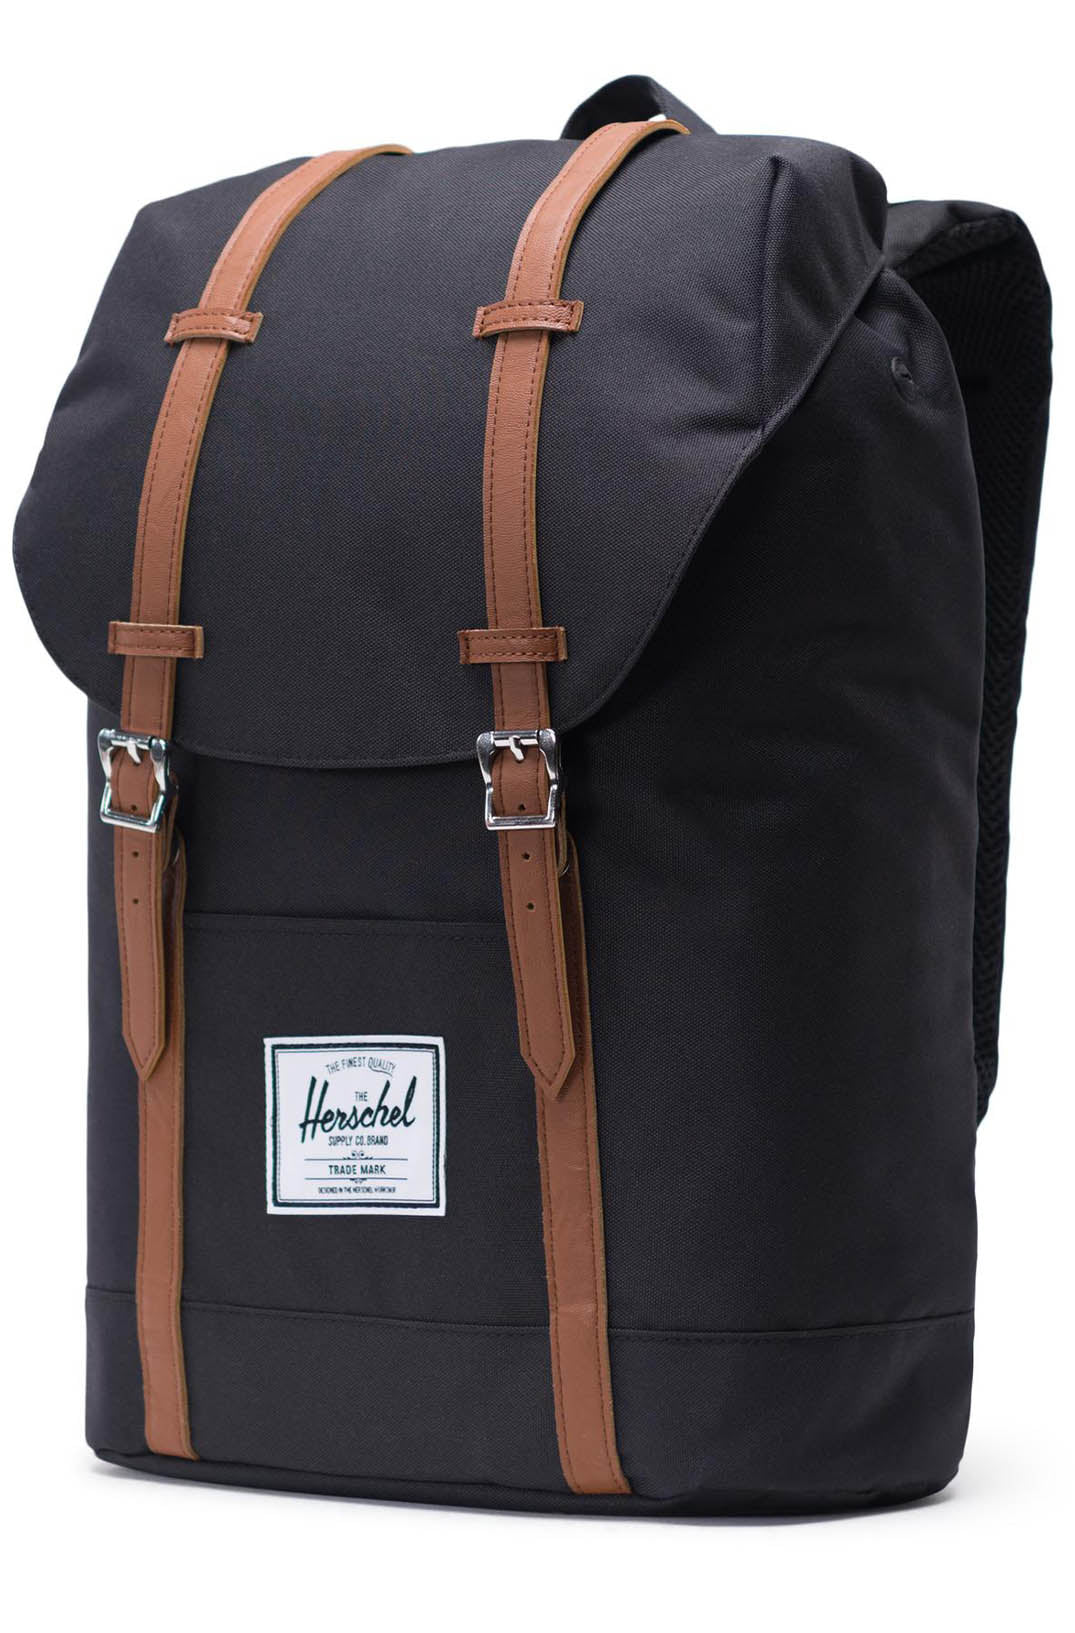 Herschel Retreat Backpack - Black